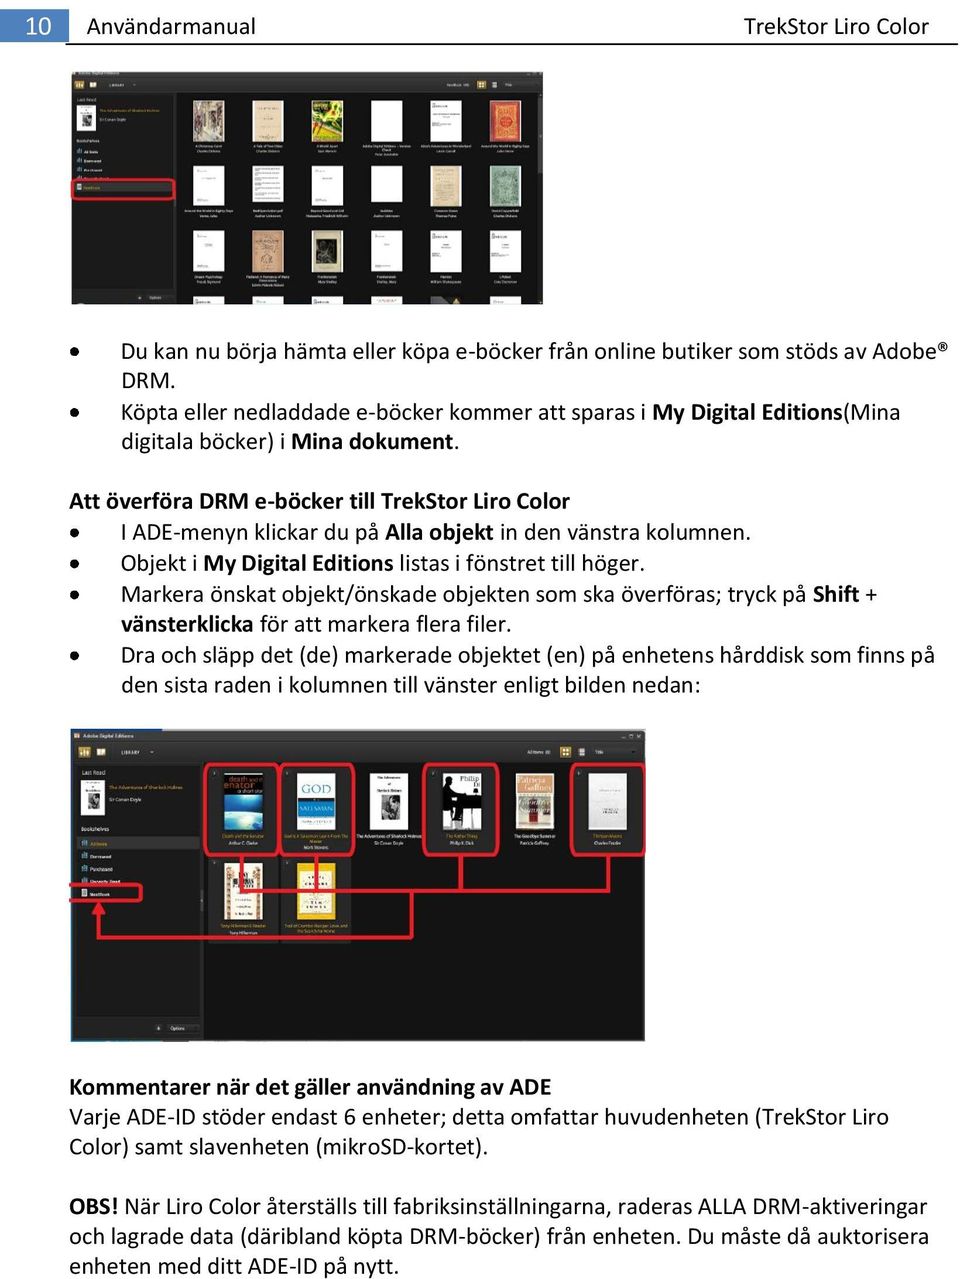 Att överföra DRM e-böcker till TrekStor Liro Color I ADE-menyn klickar du på Alla objekt in den vänstra kolumnen. Objekt i My Digital Editions listas i fönstret till höger.